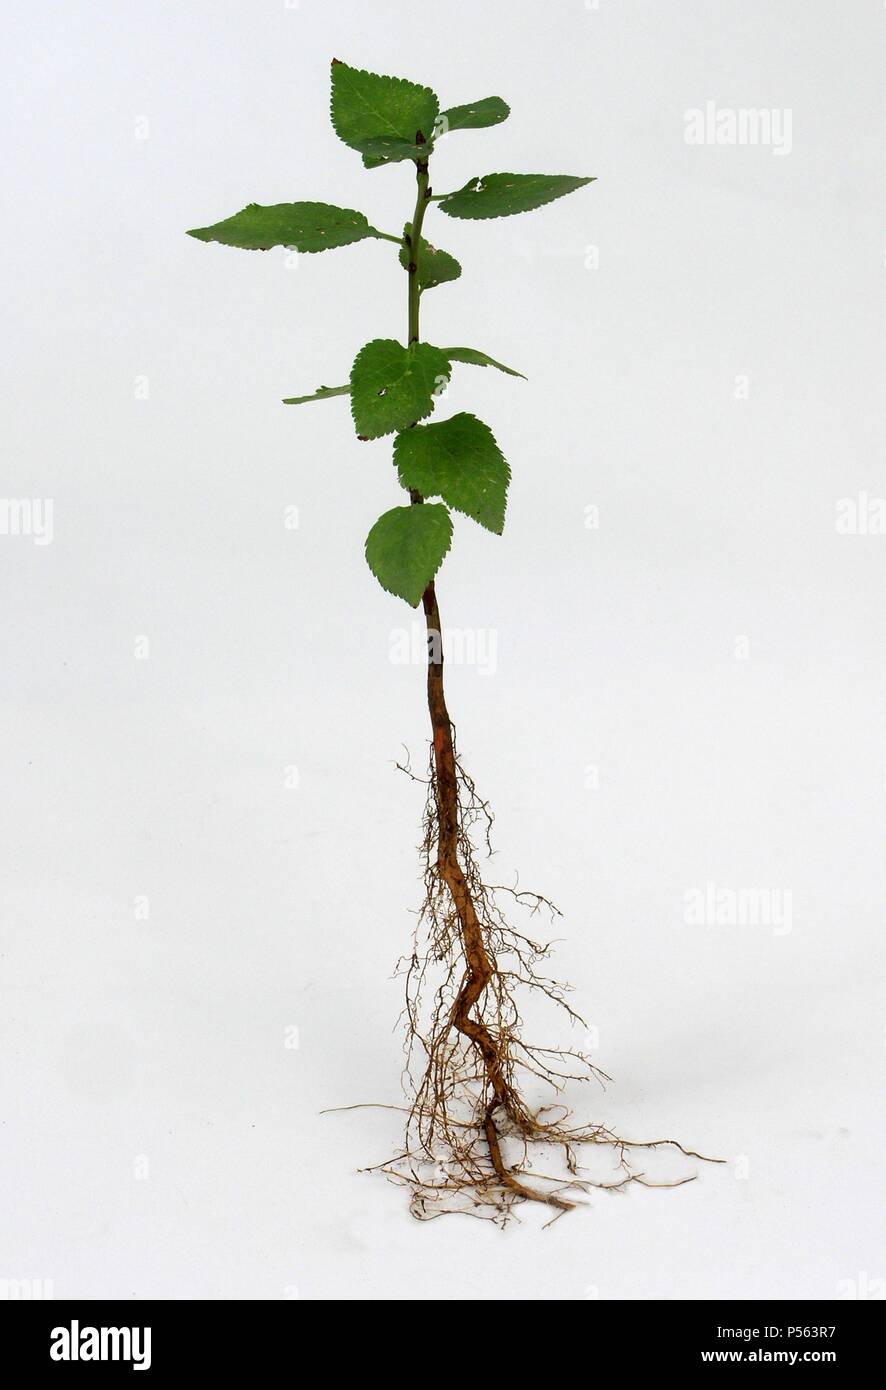 Detalle del tallo, las hojas y las raíces de una planta Fotografía de stock  - Alamy